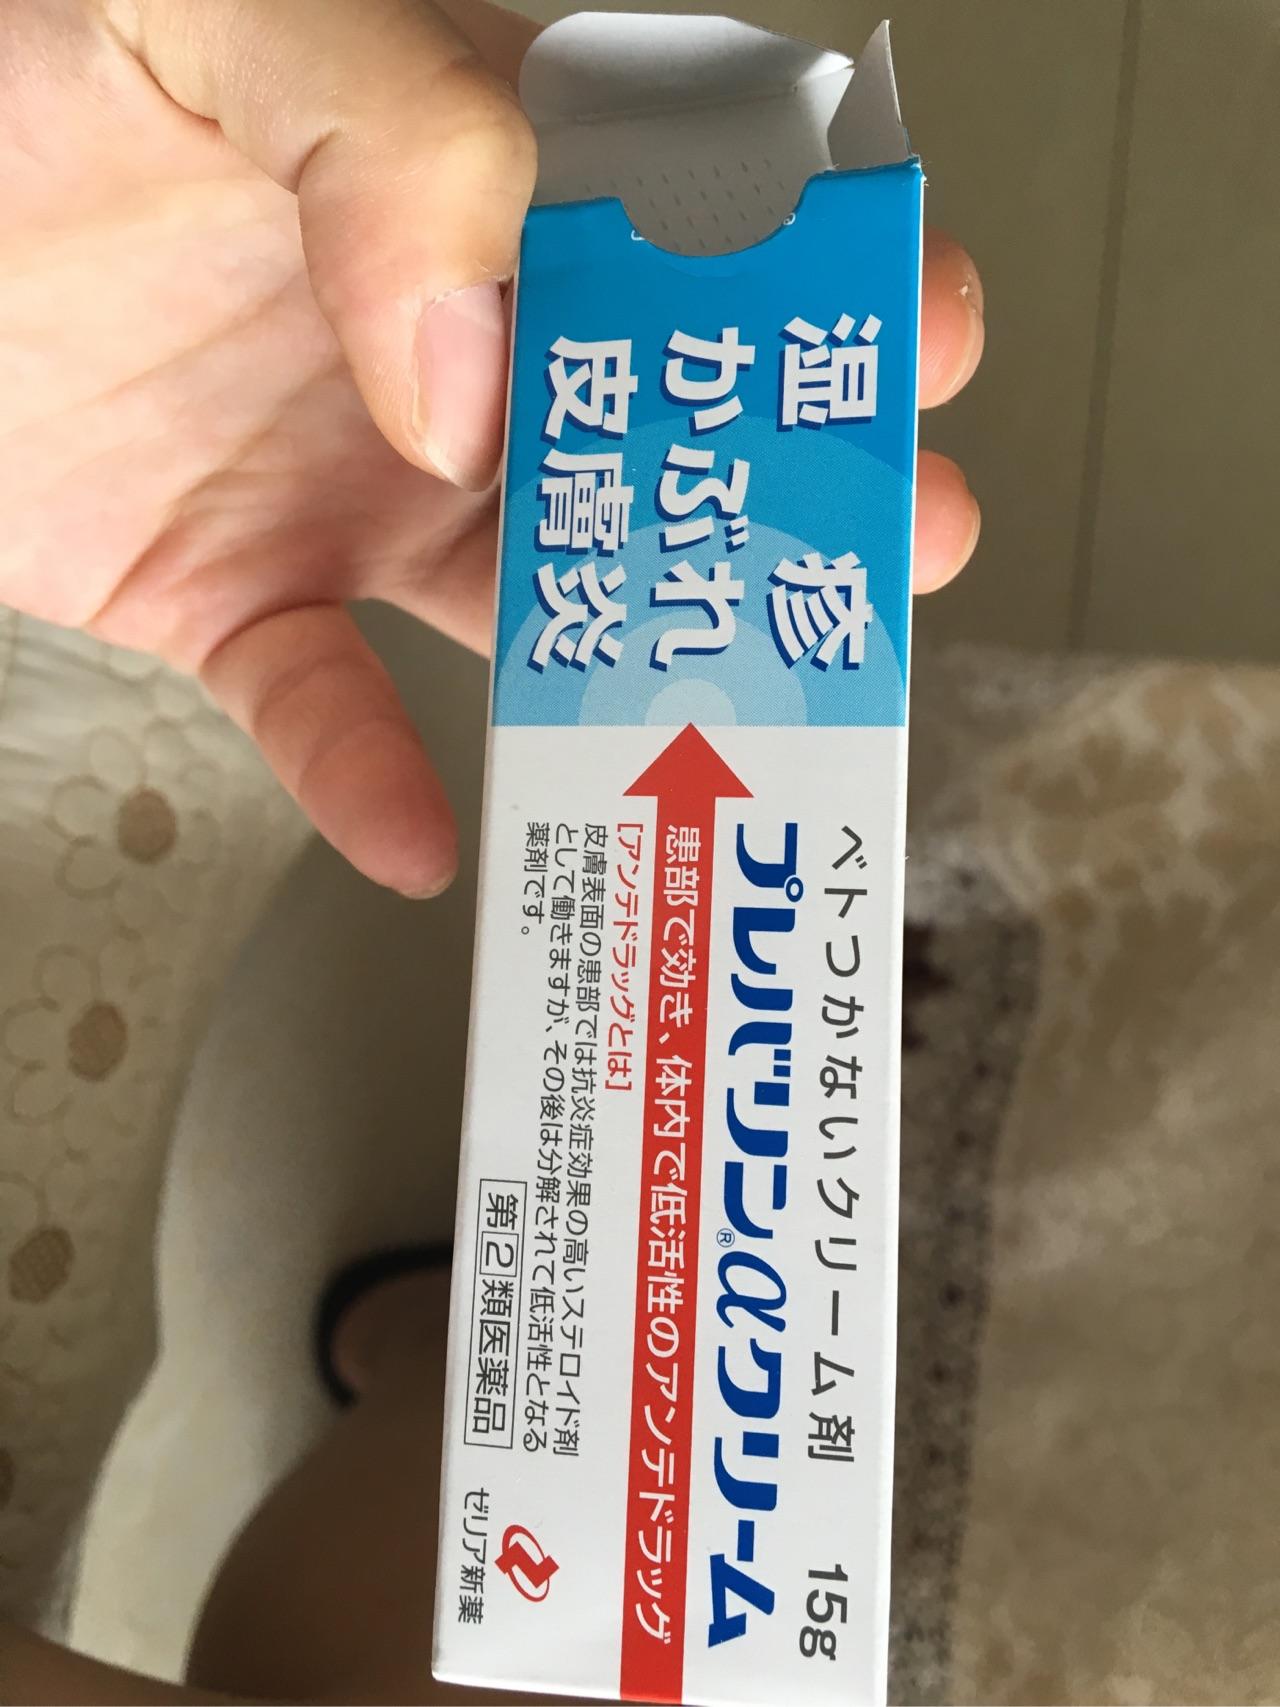 也是可以治愈的,我也比较爱起湿疹,在日本无意间买的药膏治好了!